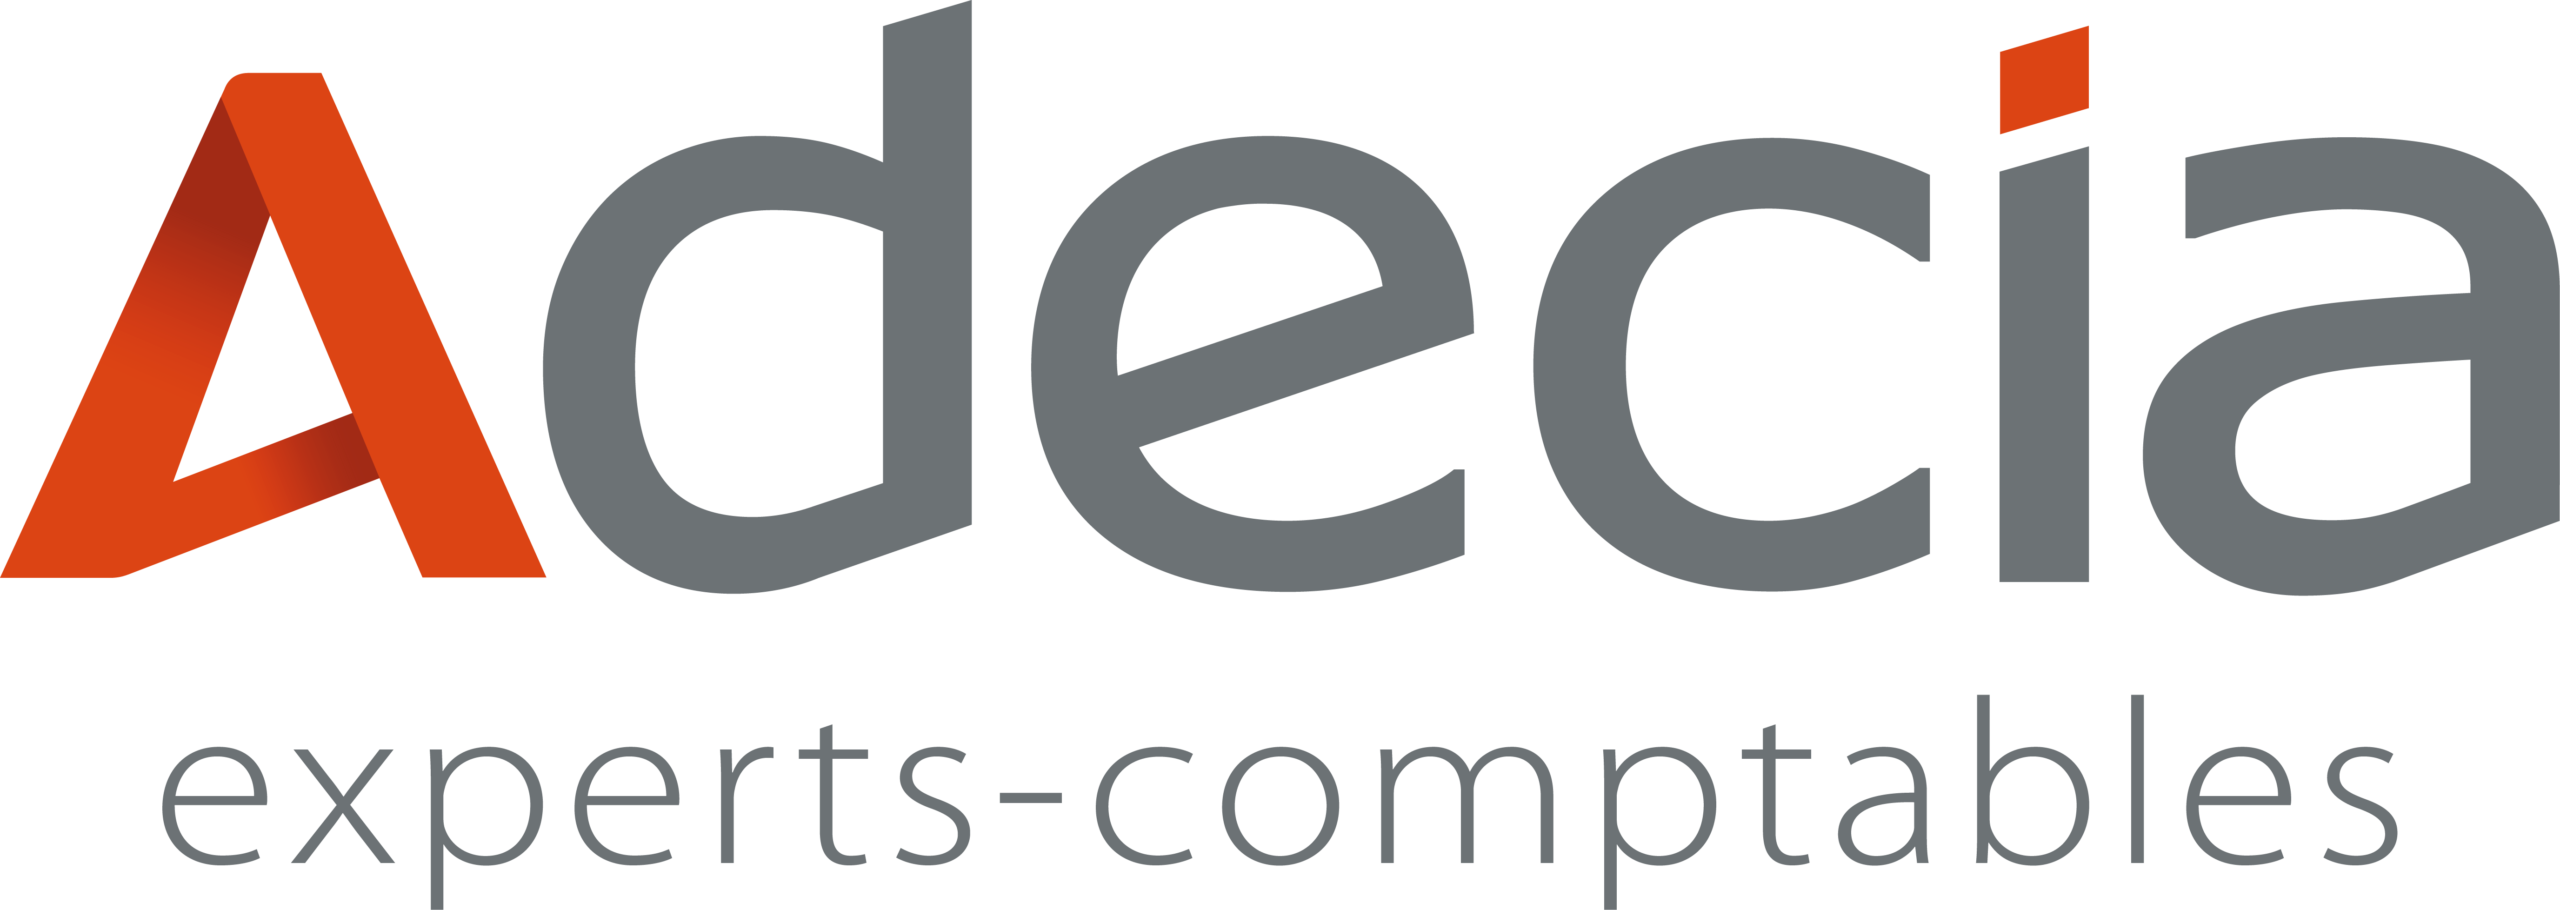 Le réseau d’experts-comptables Adecia ouvre deux nouvelles agences